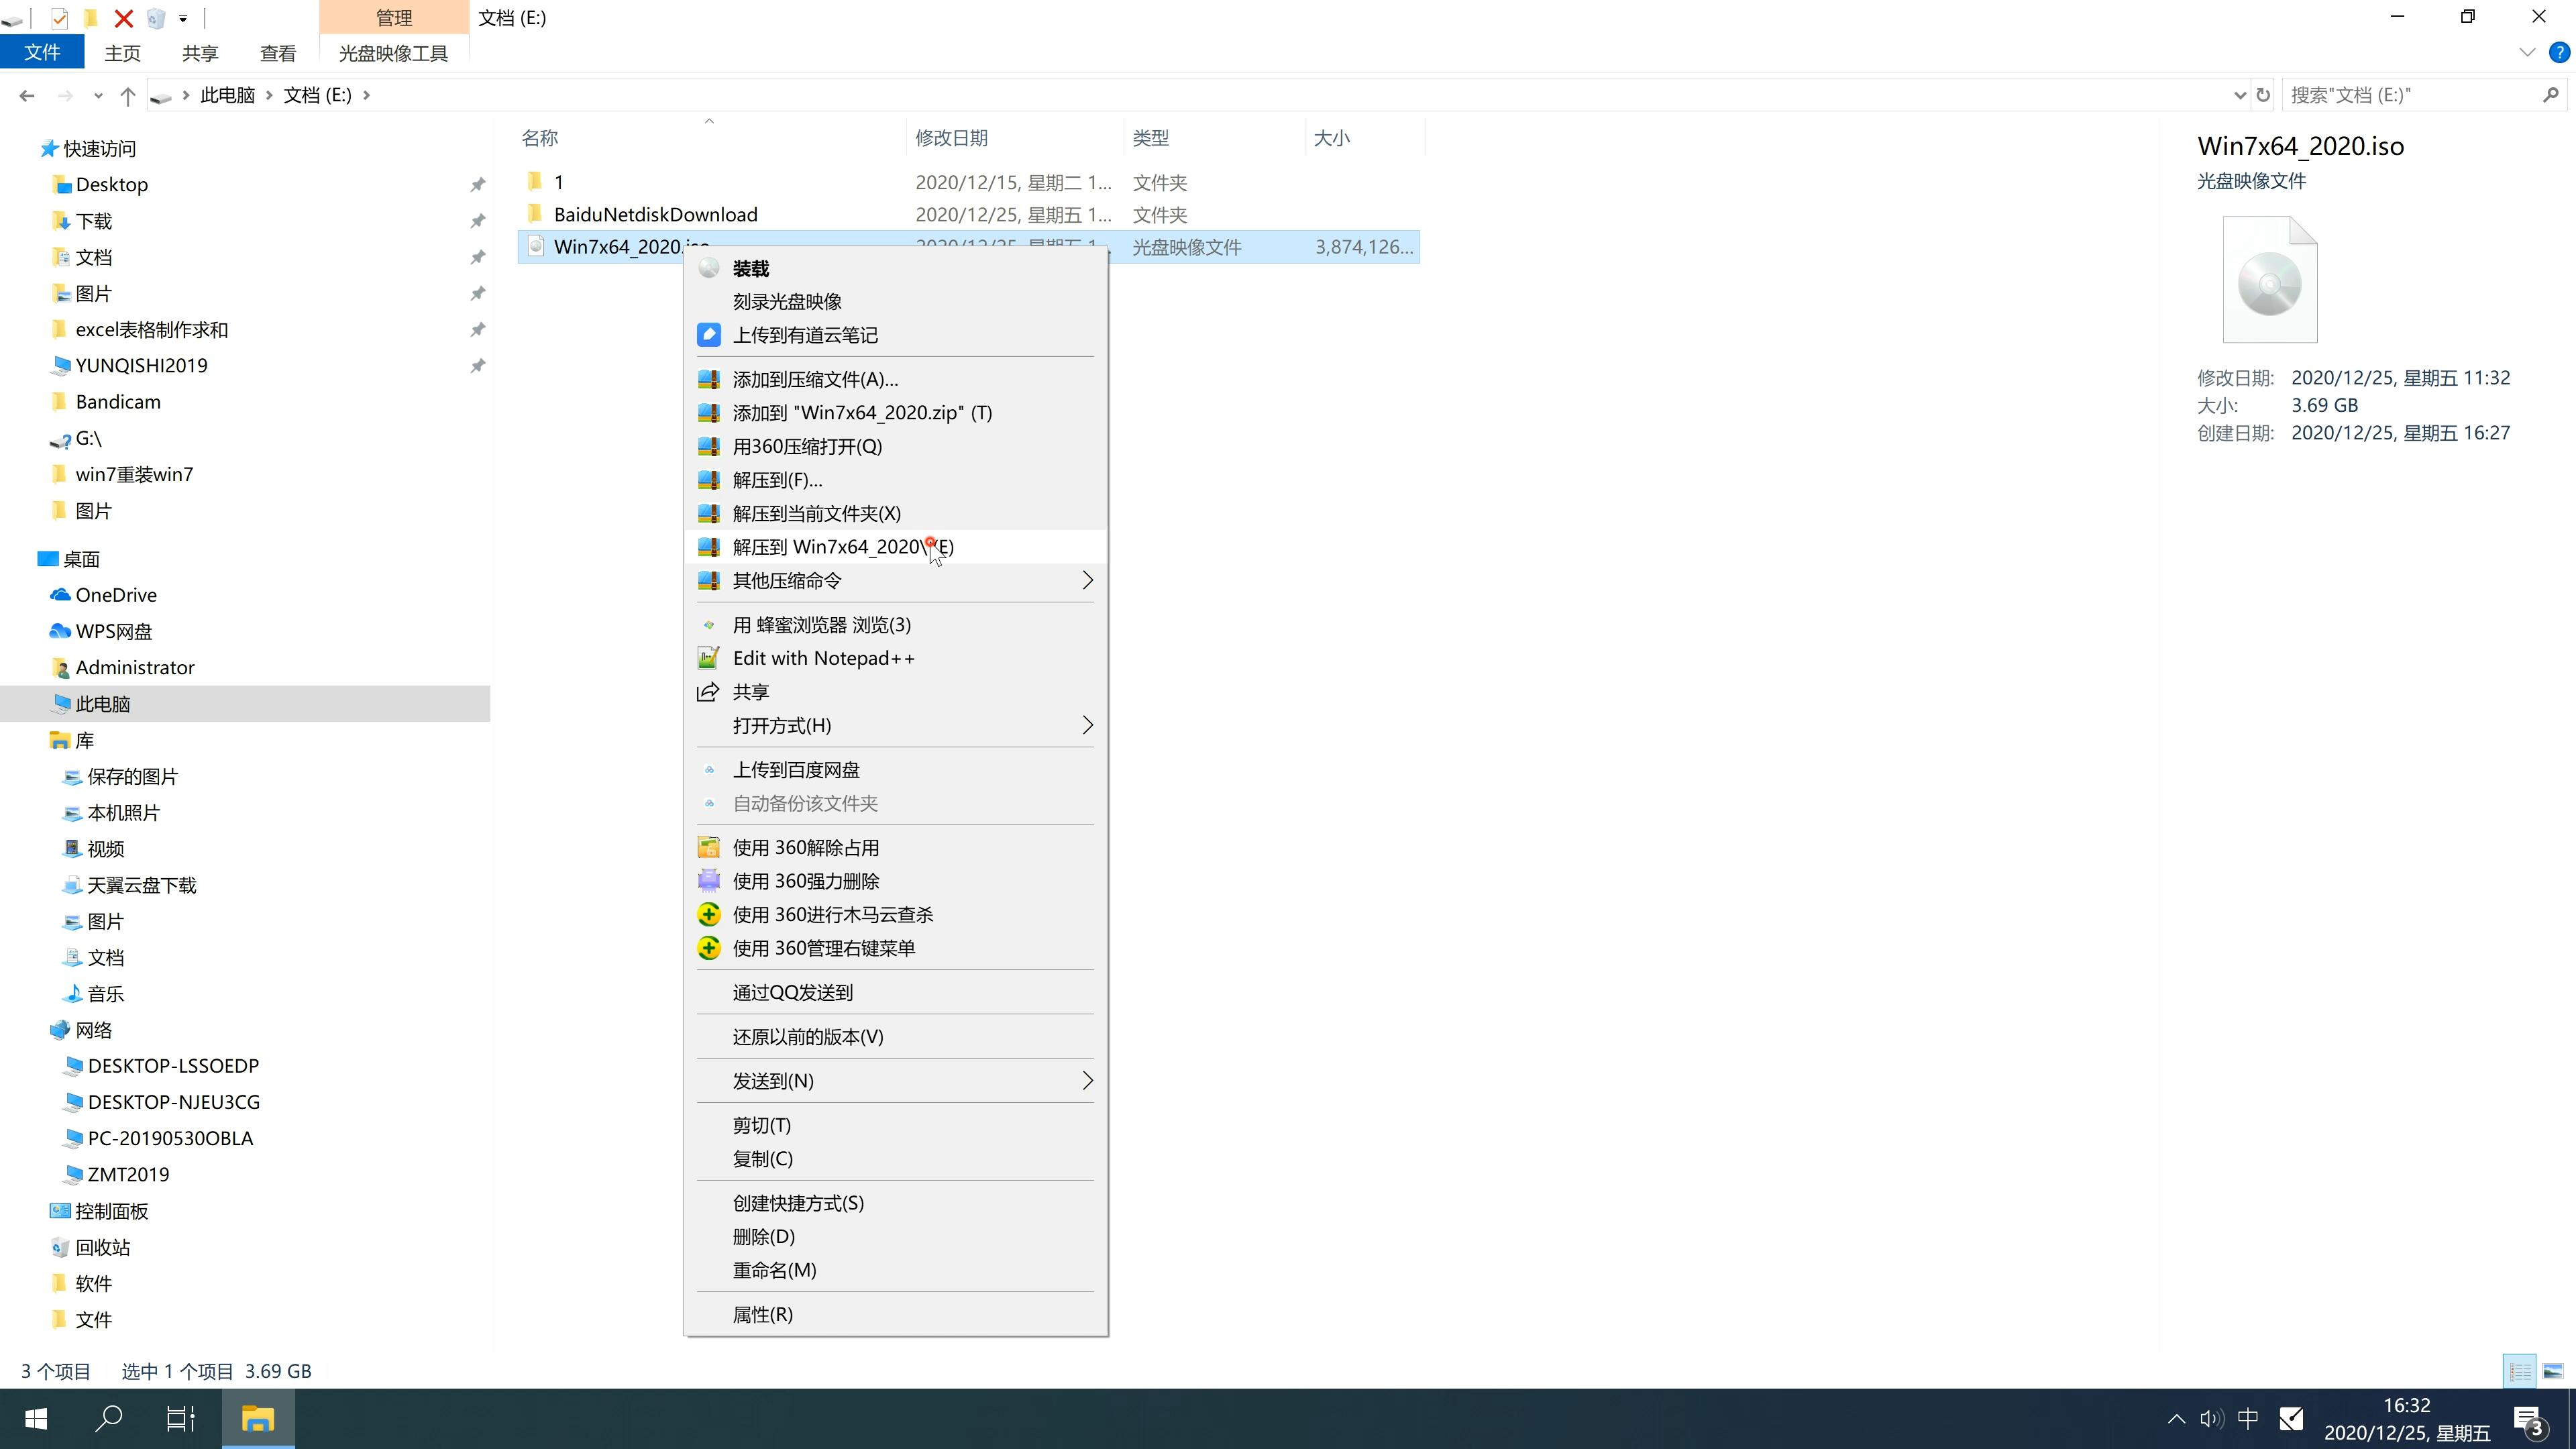 新系统之家系统  windows7 64 SP1 干净旗舰版 V2022.12(2)